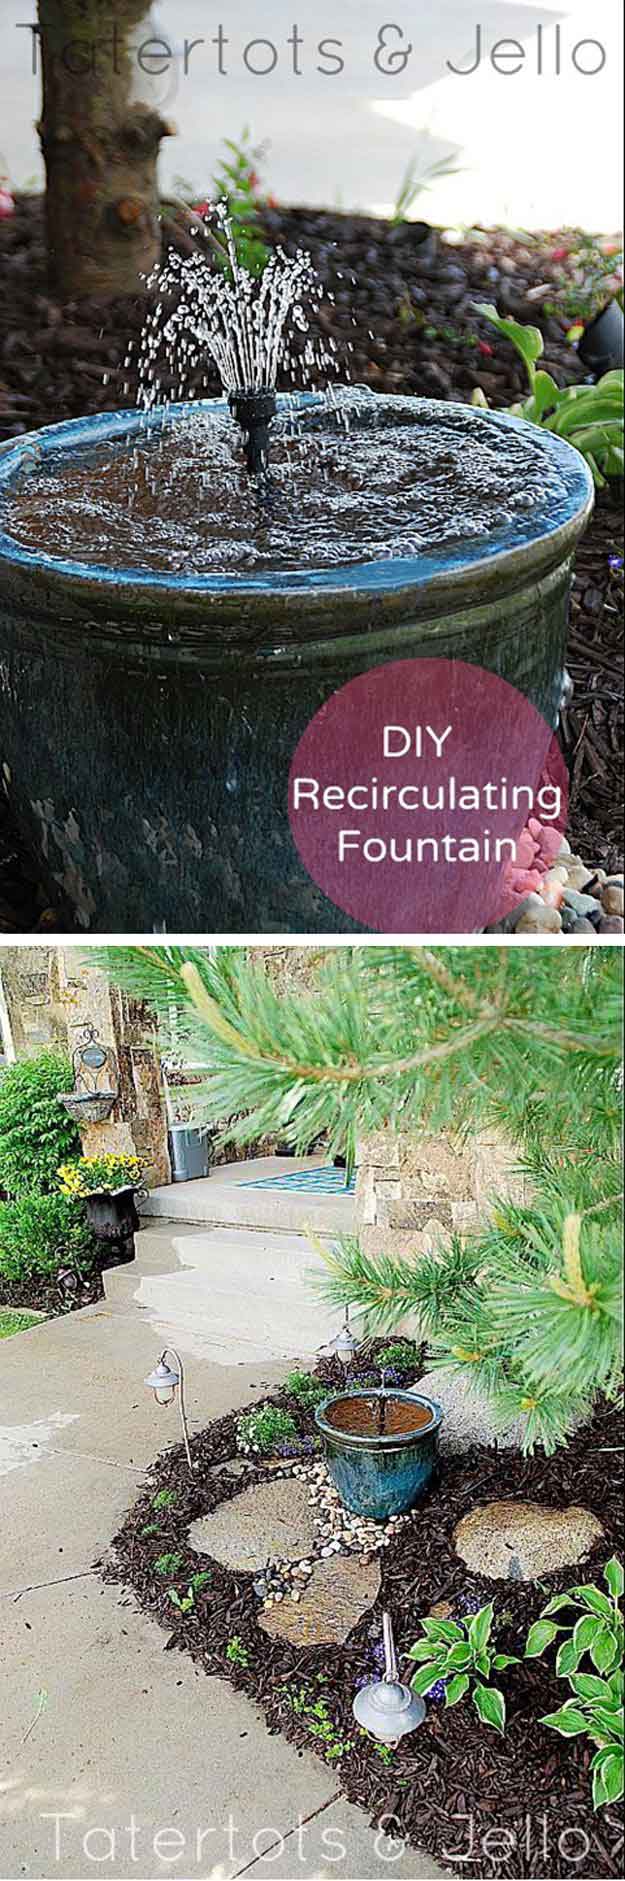 DIY Recirculating Fountain